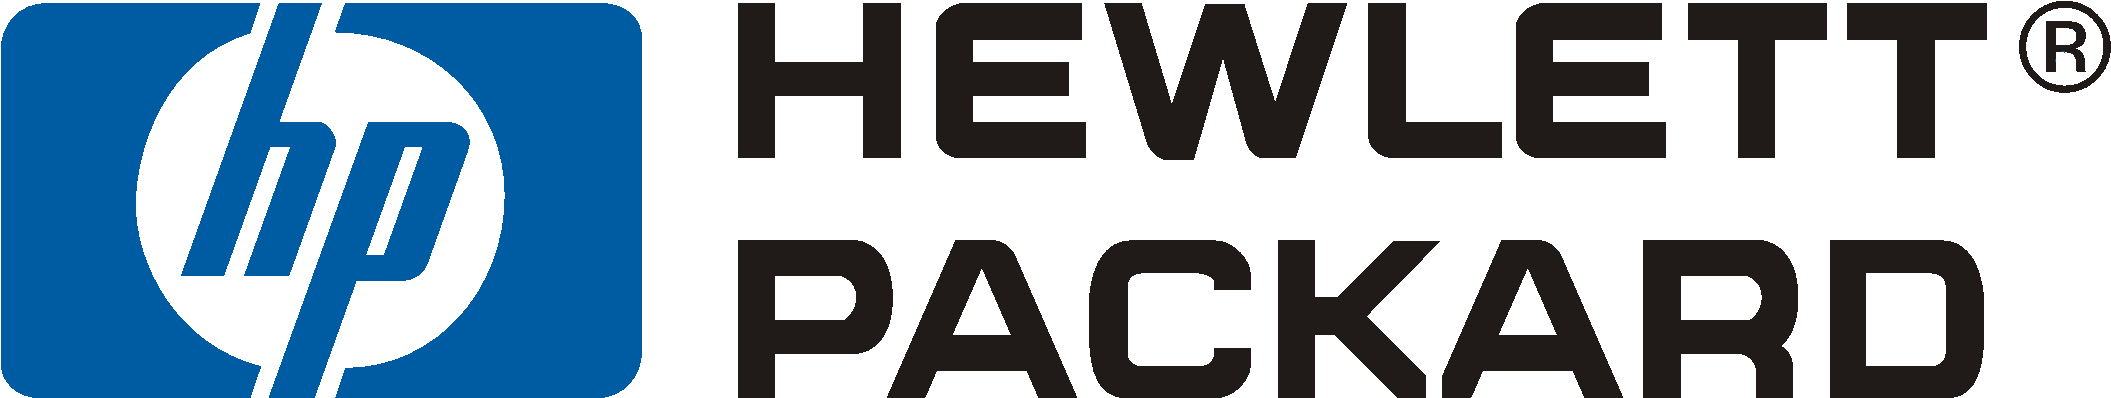 Hewlett Packard Logo - Ref - Hp - 599476-003 (2257x714)